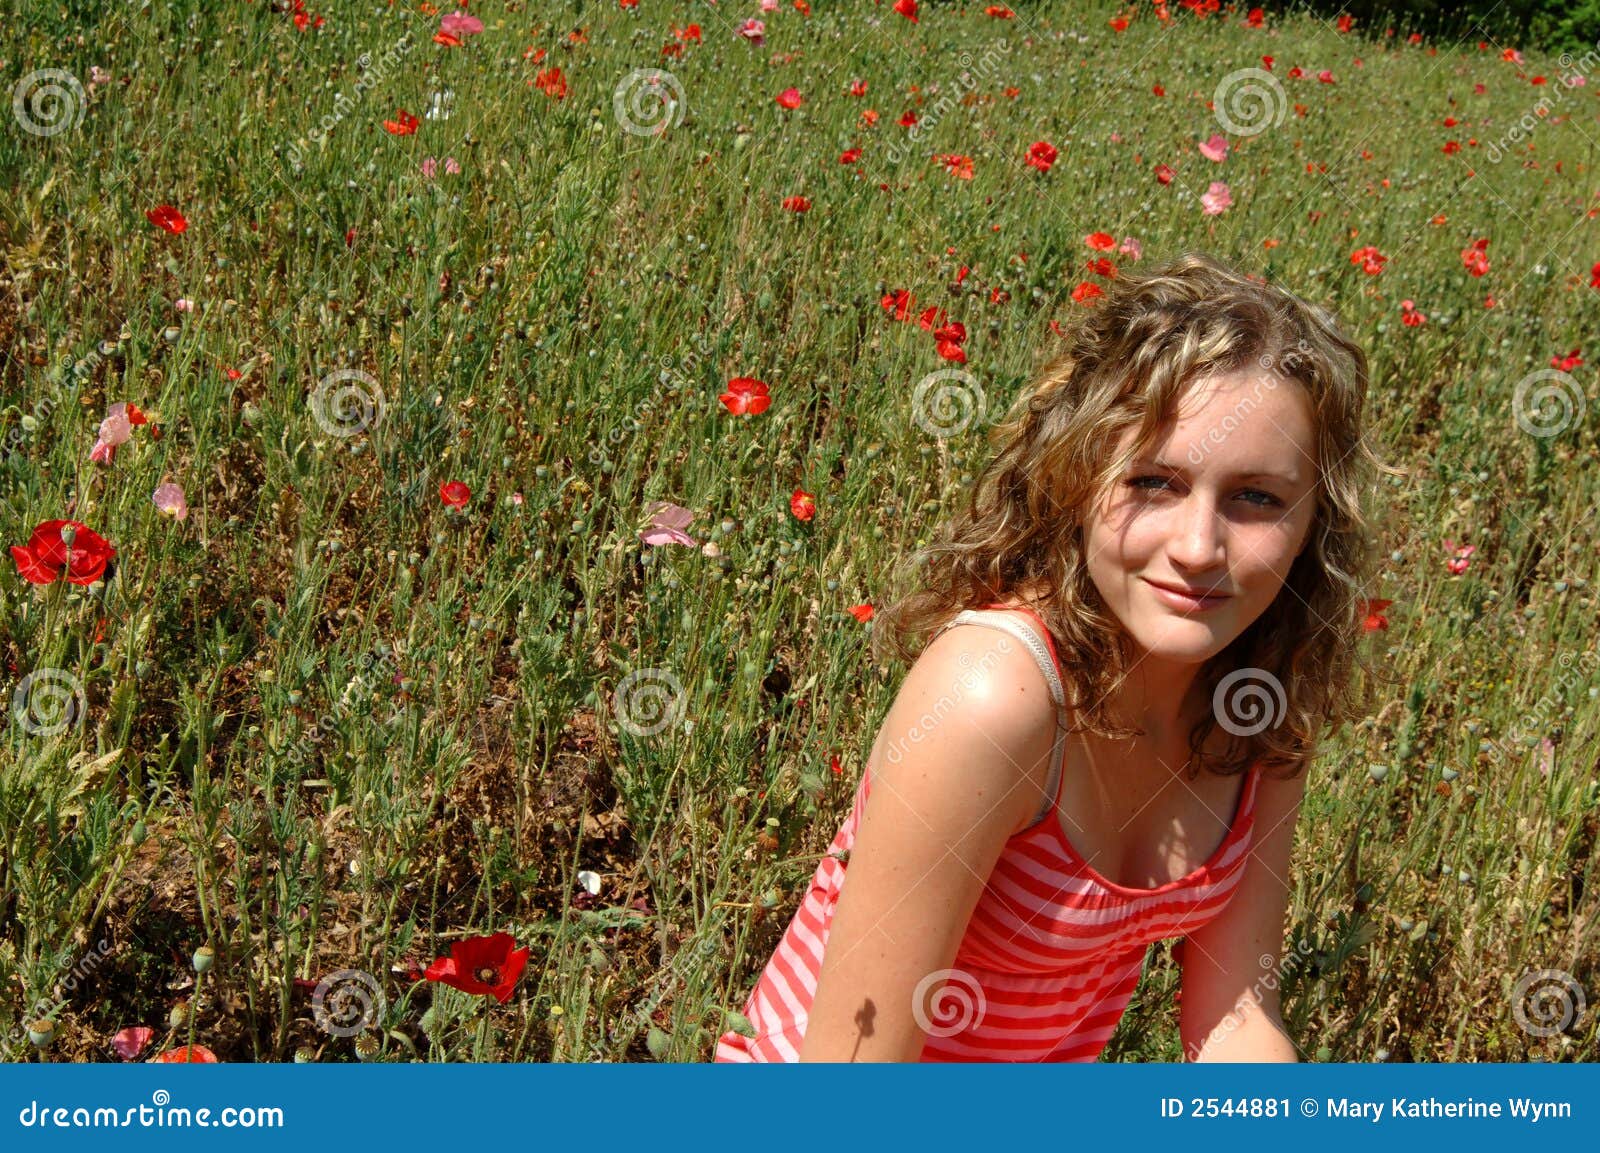 Flower Teen 19